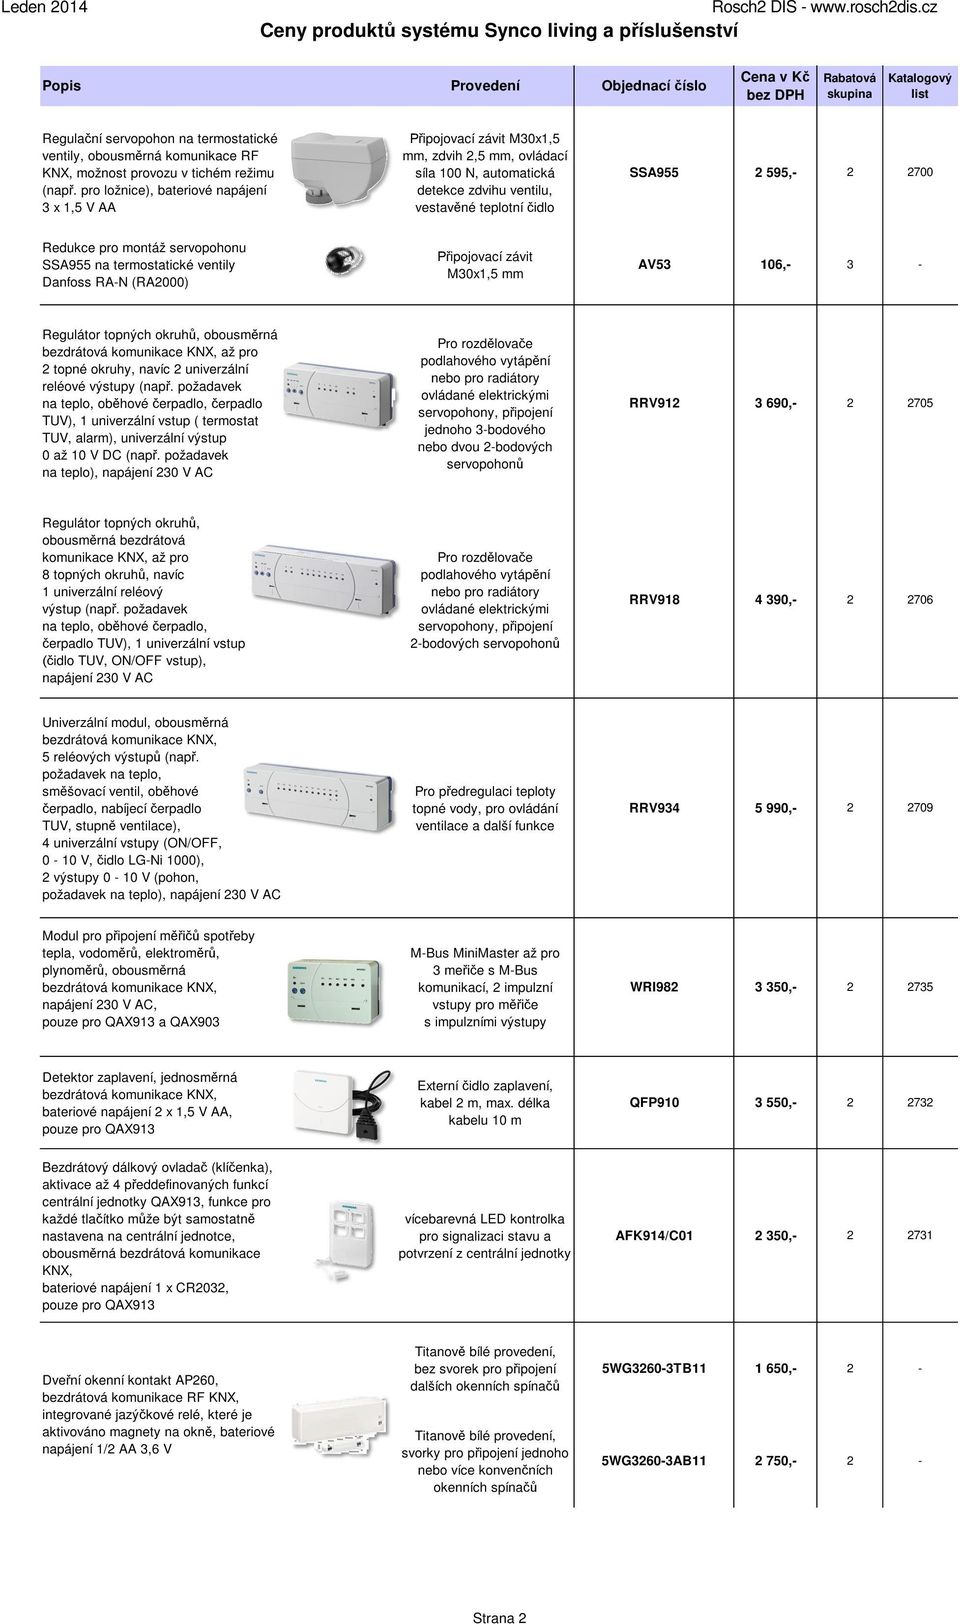 Redukce pro montáž servopohonu SSA955 na termostatické ventily Danfoss RA-N (RA2000) Připojovací závit M30x1,5 mm AV53 106,- 3 - Regulátor topných okruhů, obousměrná bezdrátová komunikace KNX, až pro